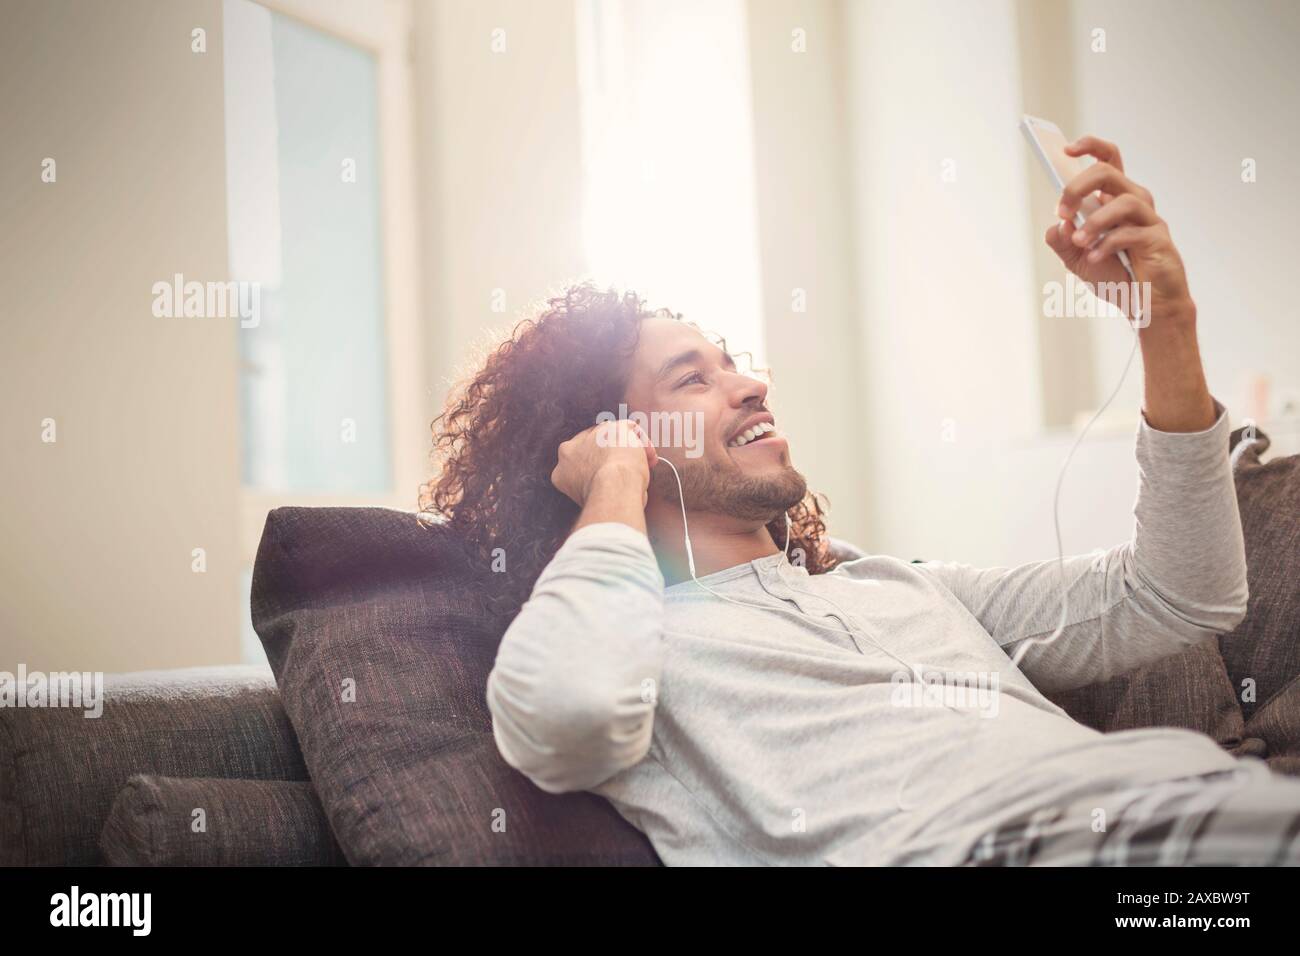 Un jeune homme souriant se détendant, écoutant de la musique avec un smartphone et un casque sur un canapé Banque D'Images